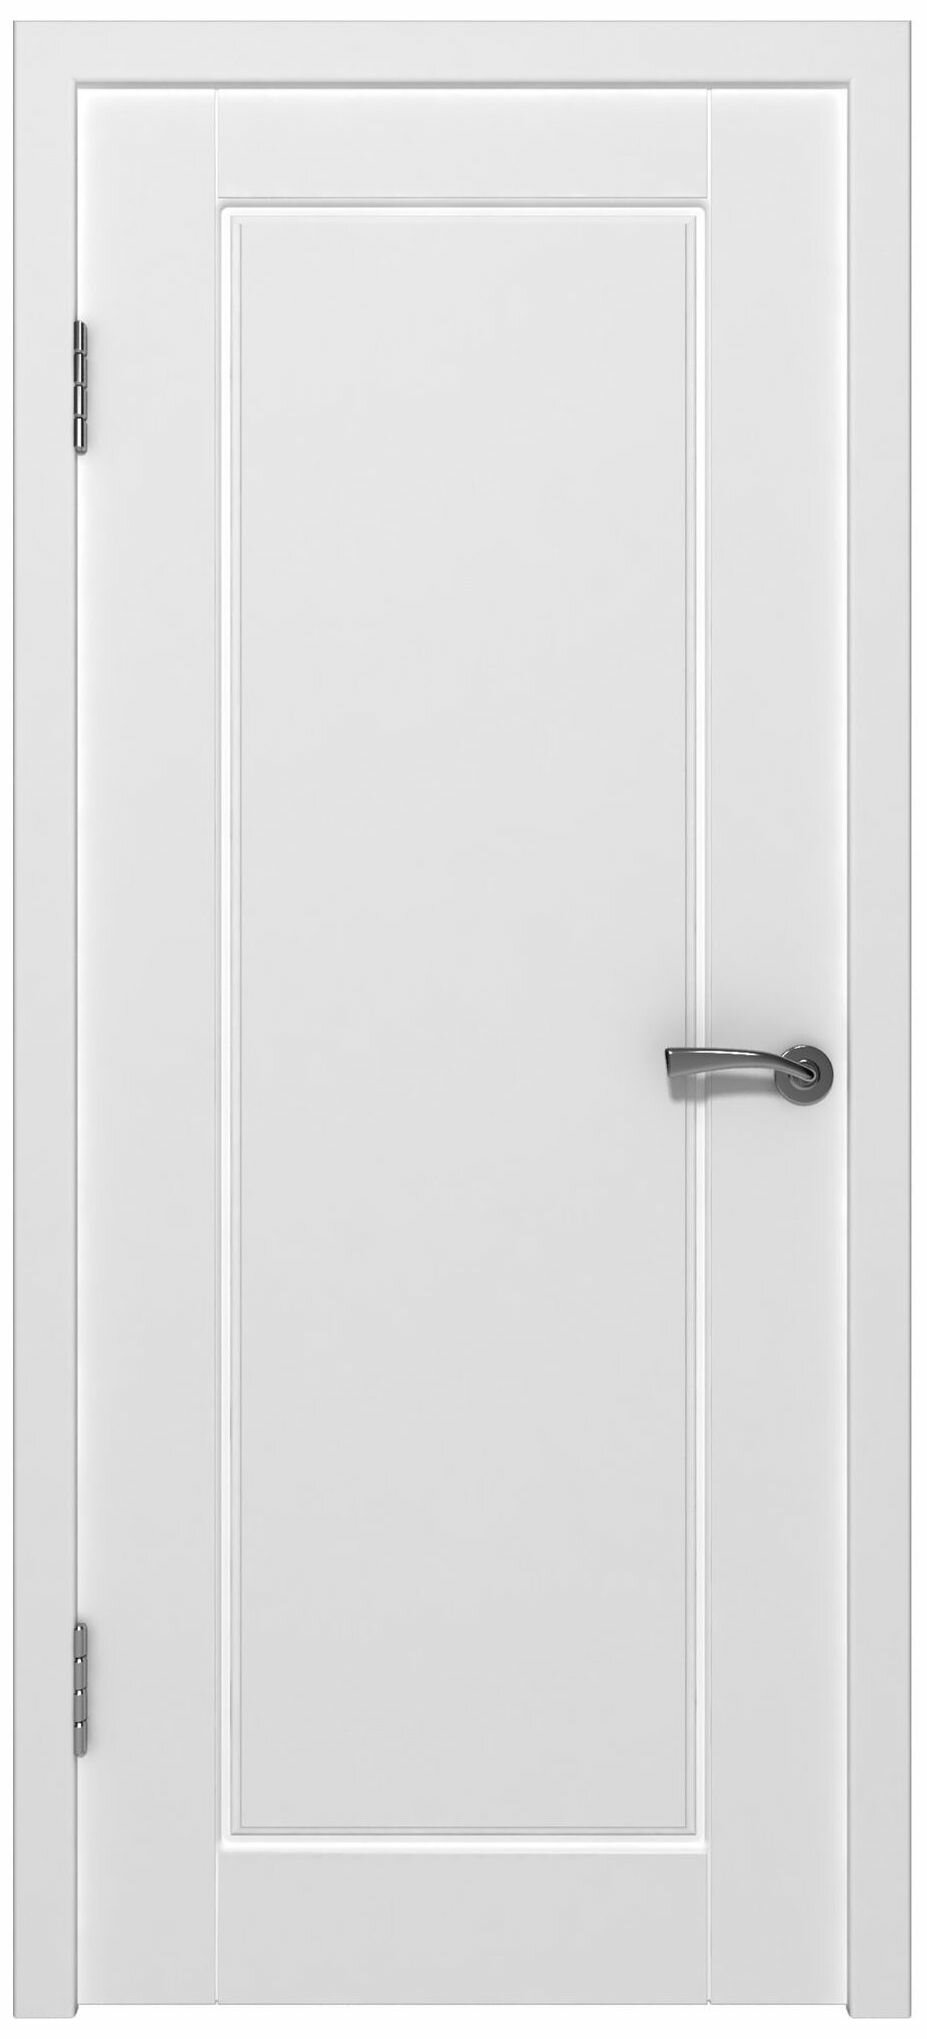 Межкомнатная дверь Порта глухая Белая 80х200 cм